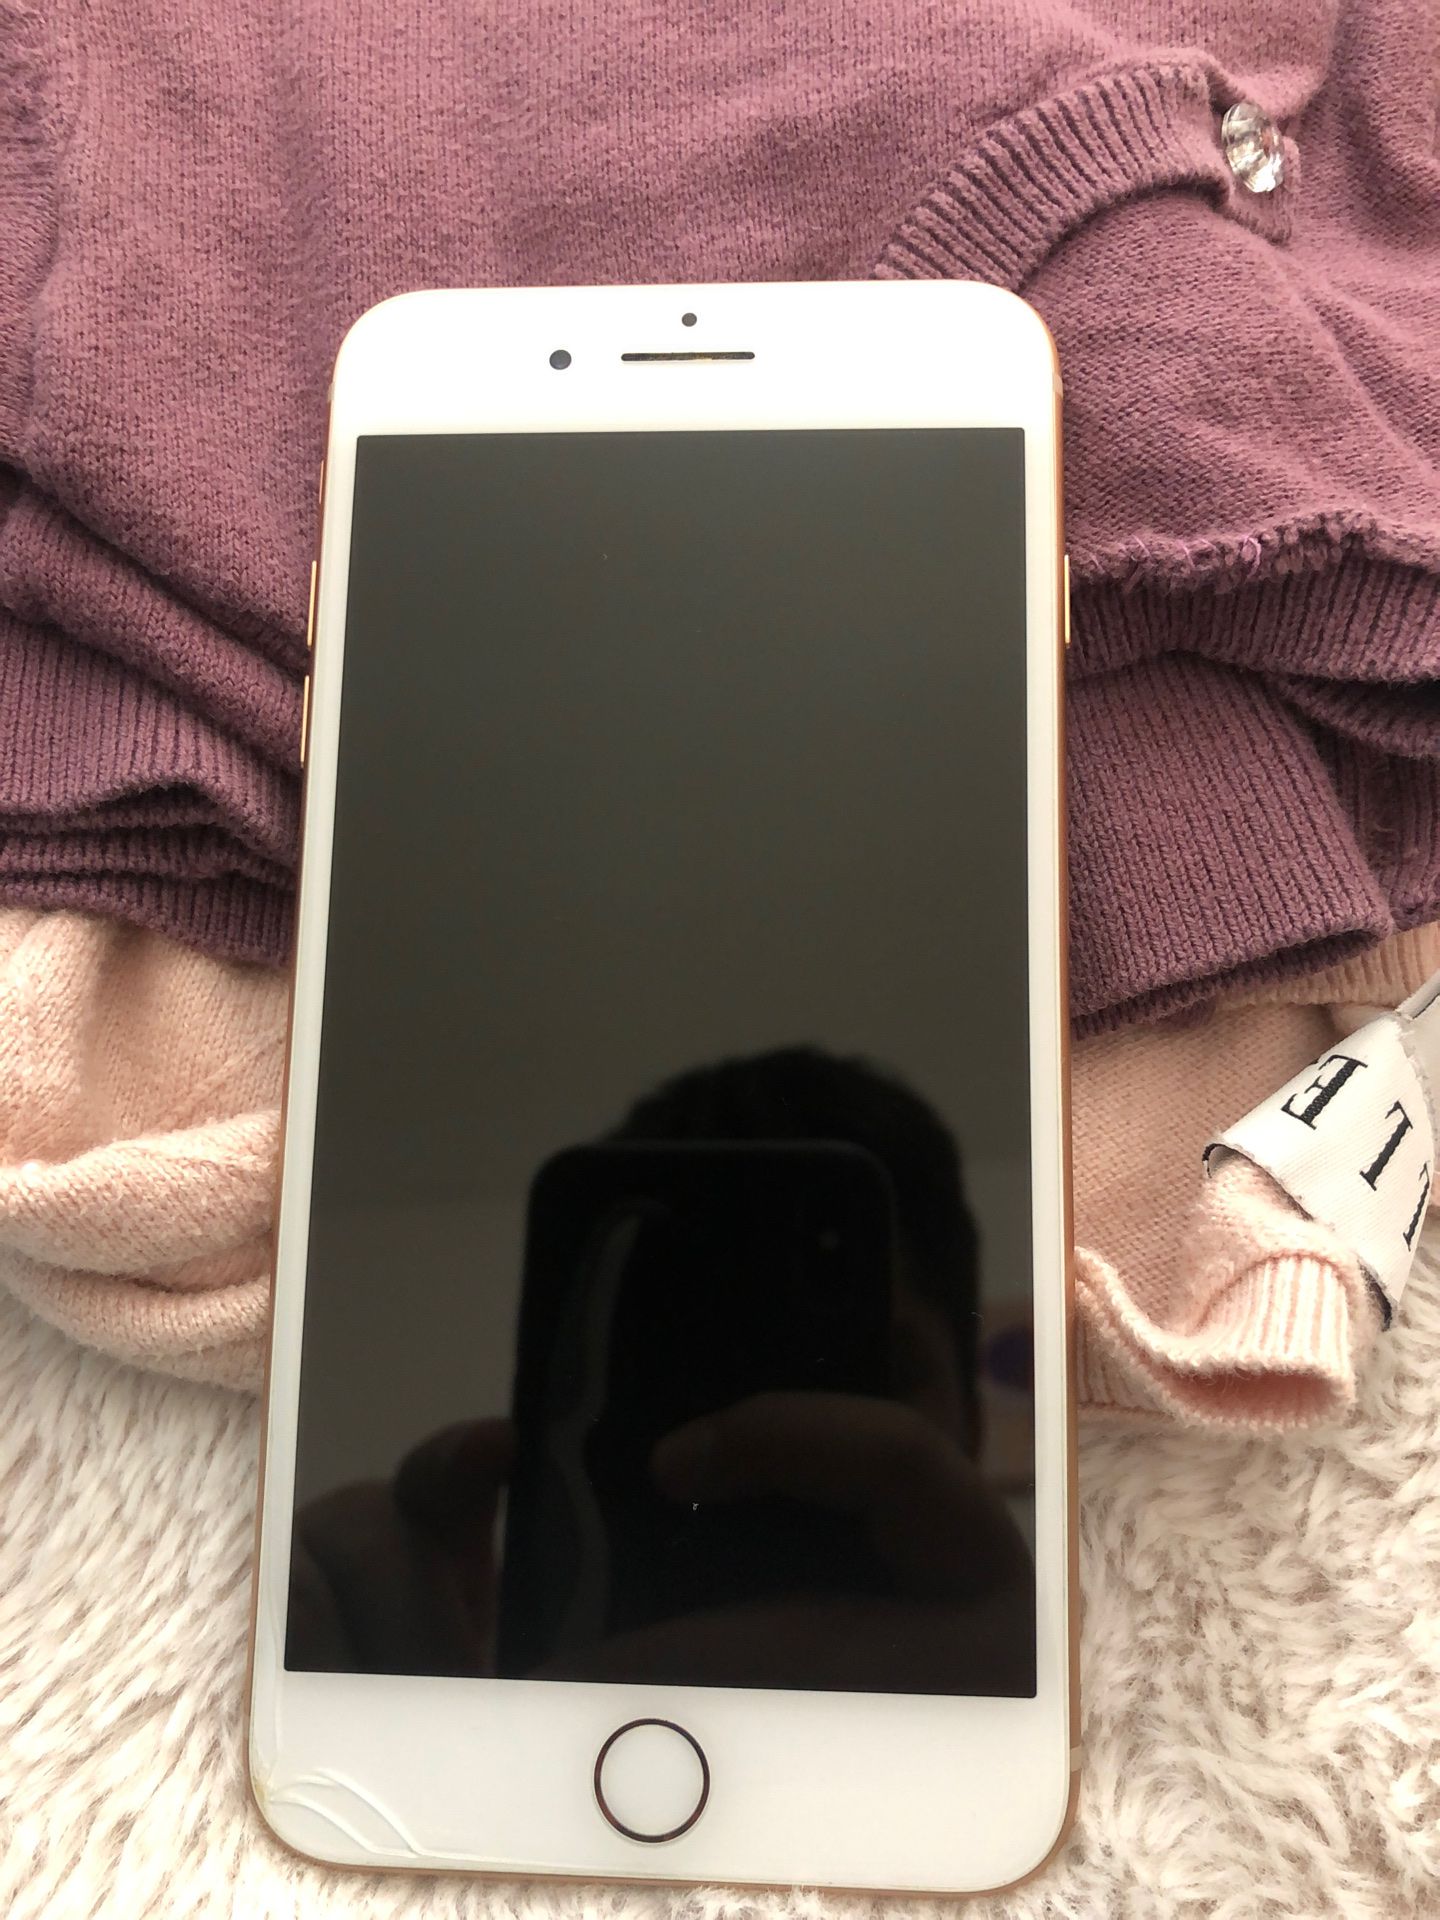 iPhone 8 Plus iCloud locked